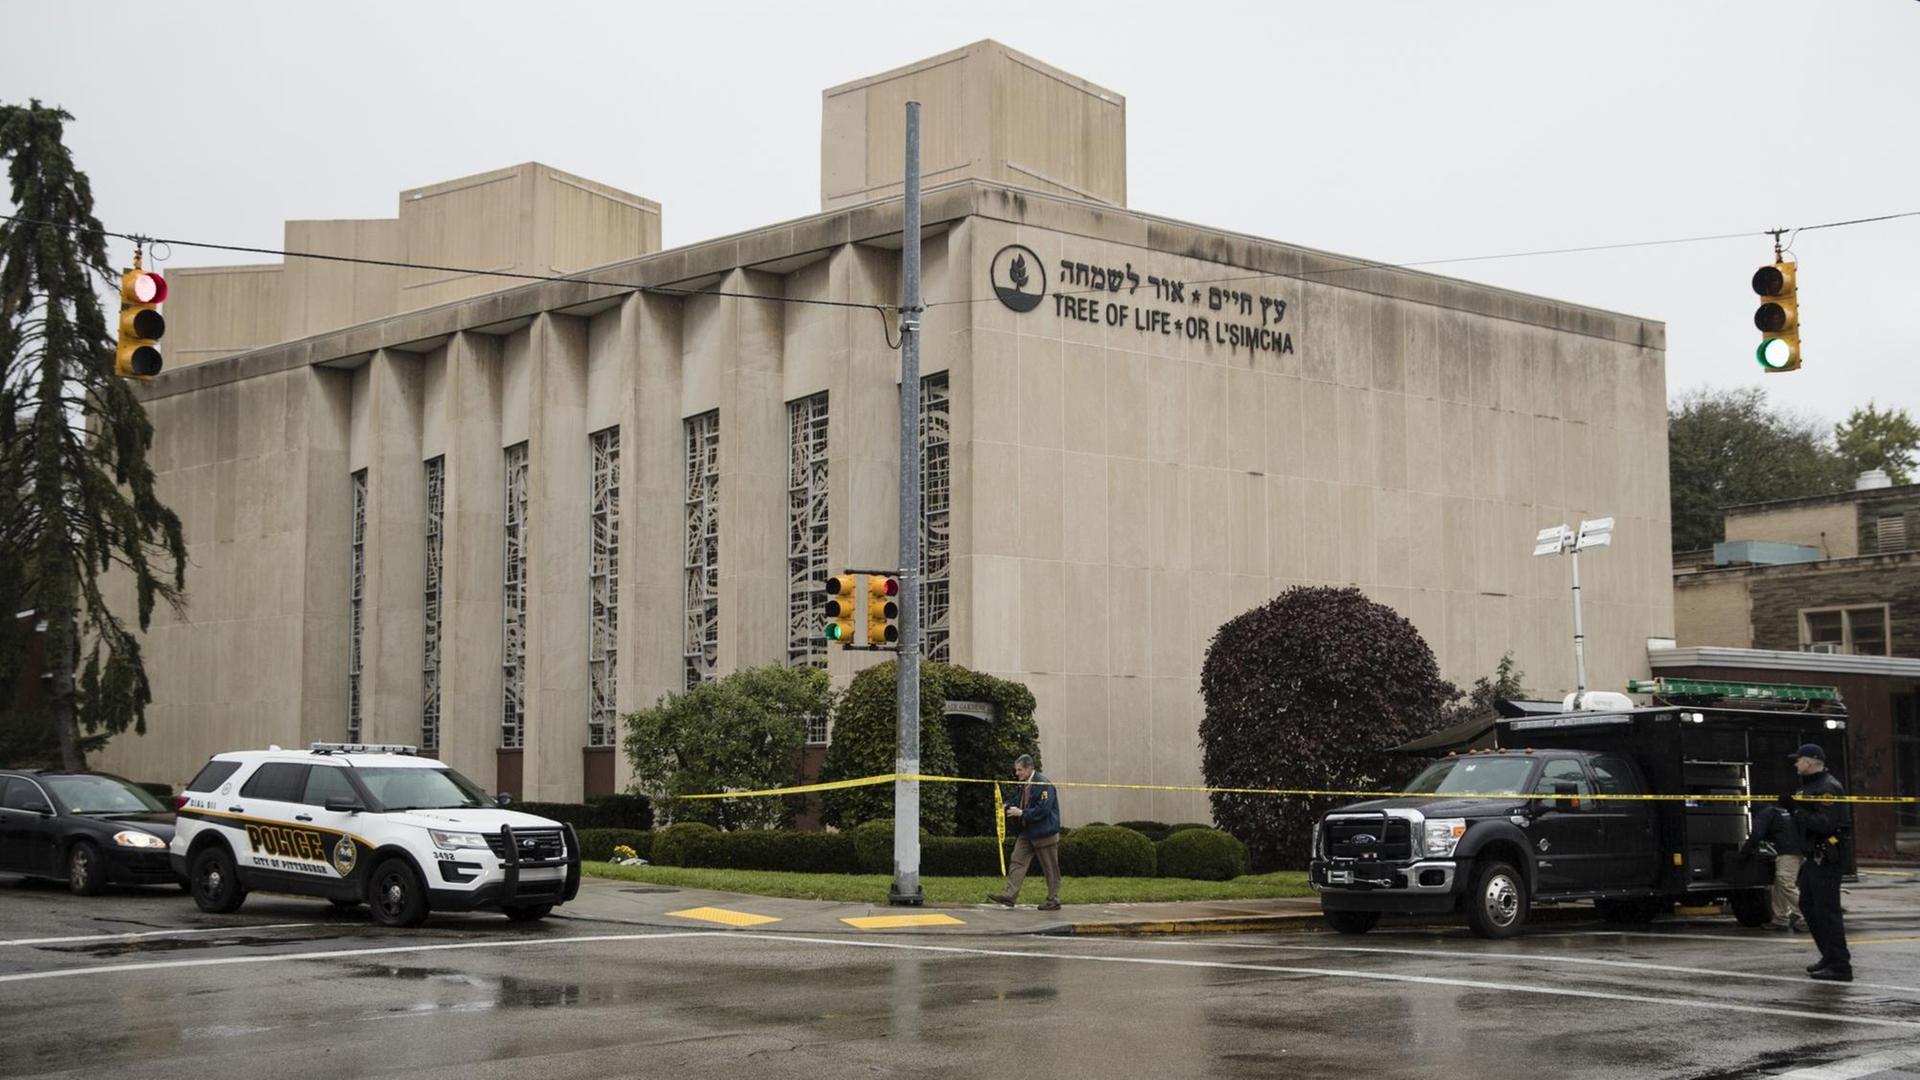 Ein Mann hat in einem Gebets-Haus von Juden in dem Land USA 11 Menschen getötet.